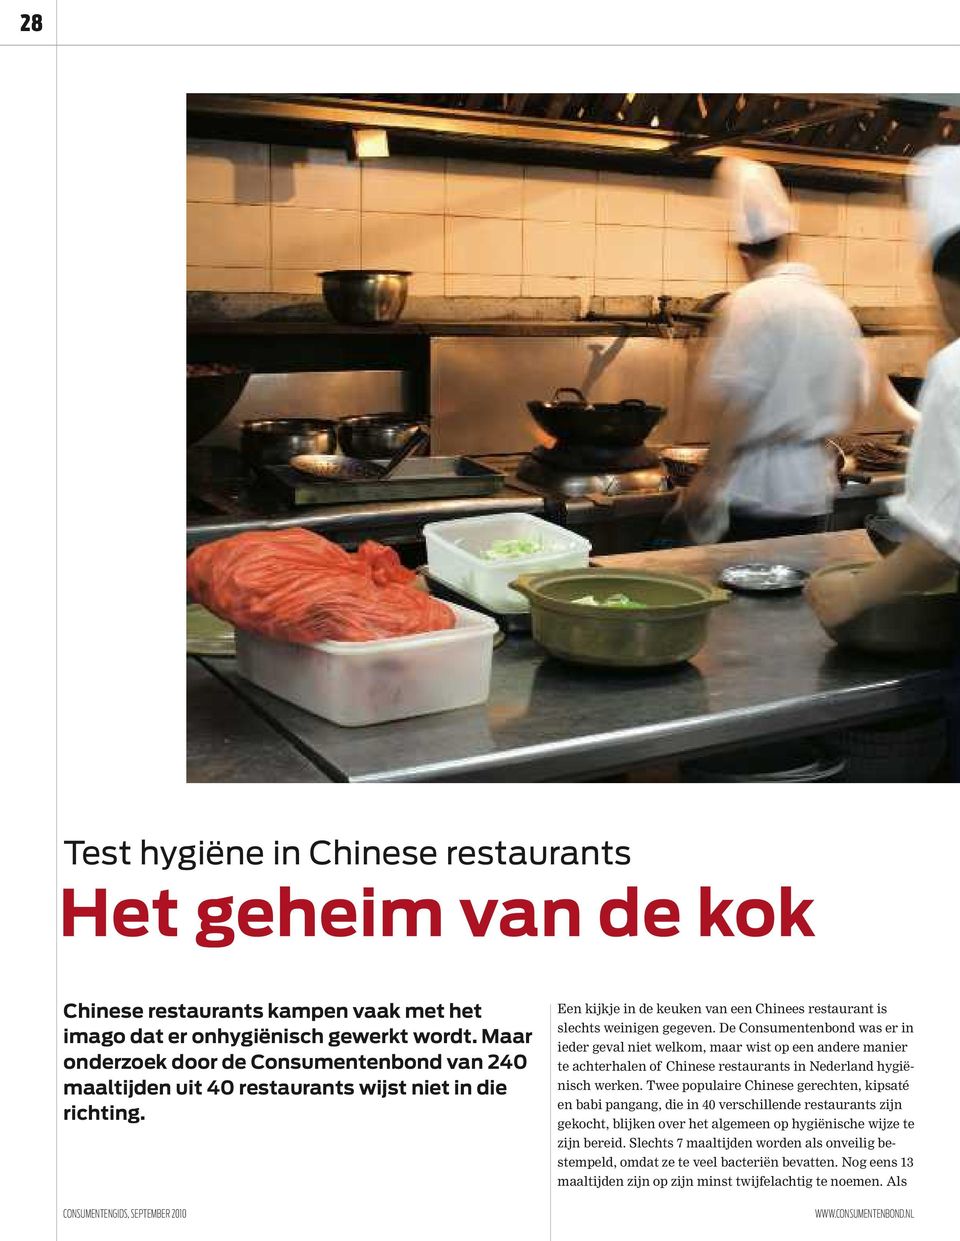 De Consumentenbond was er in ieder geval niet welkom, maar wist op een andere manier te achterhalen of Chinese restaurants in Nederland hygiënisch werken.